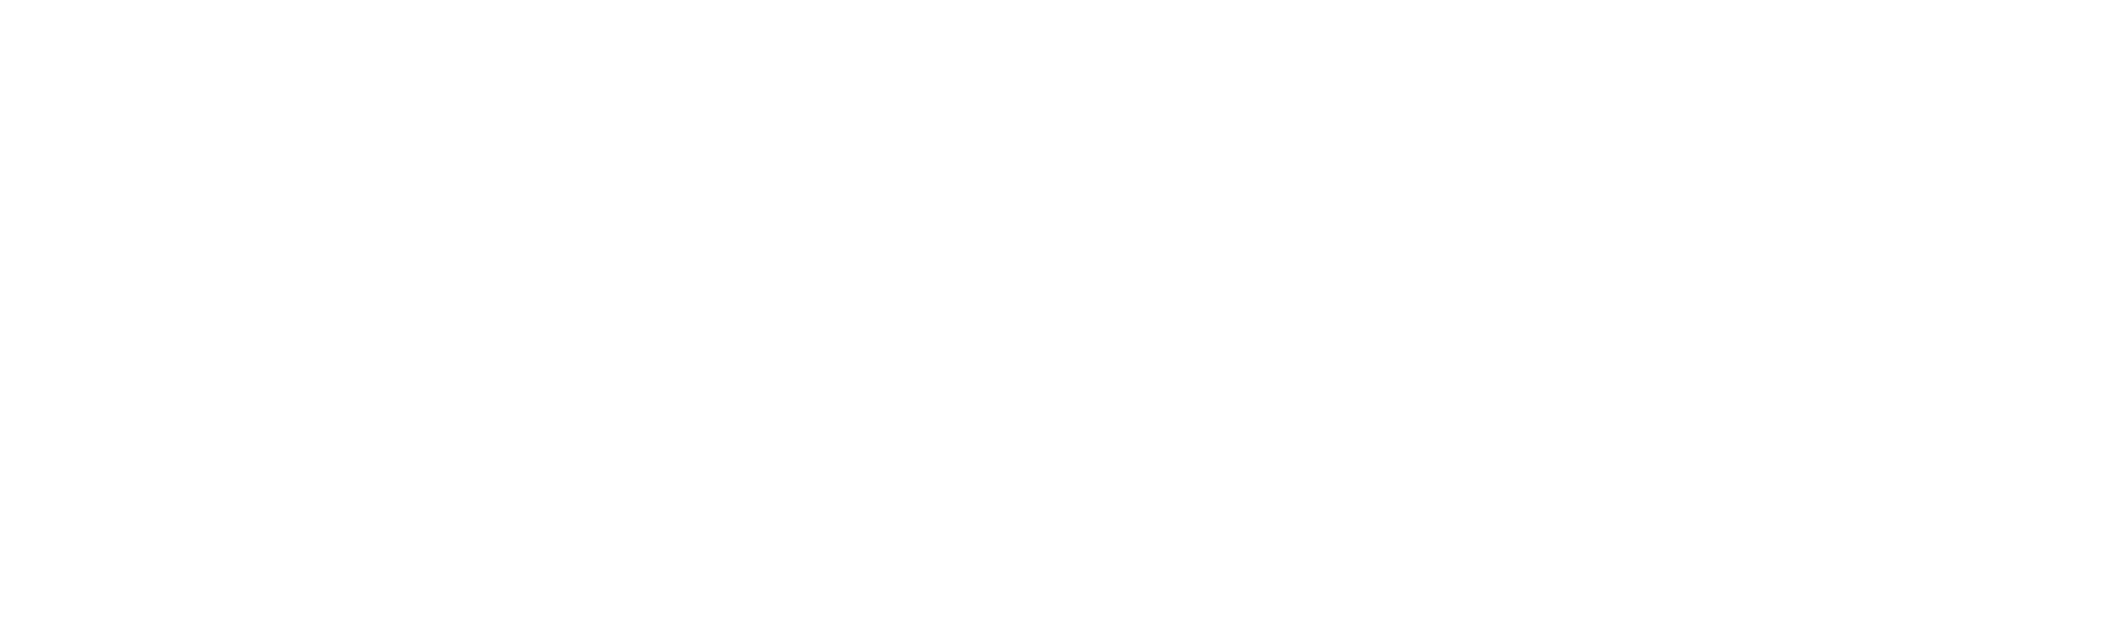 SENJOY - Bringing joy to Seniors